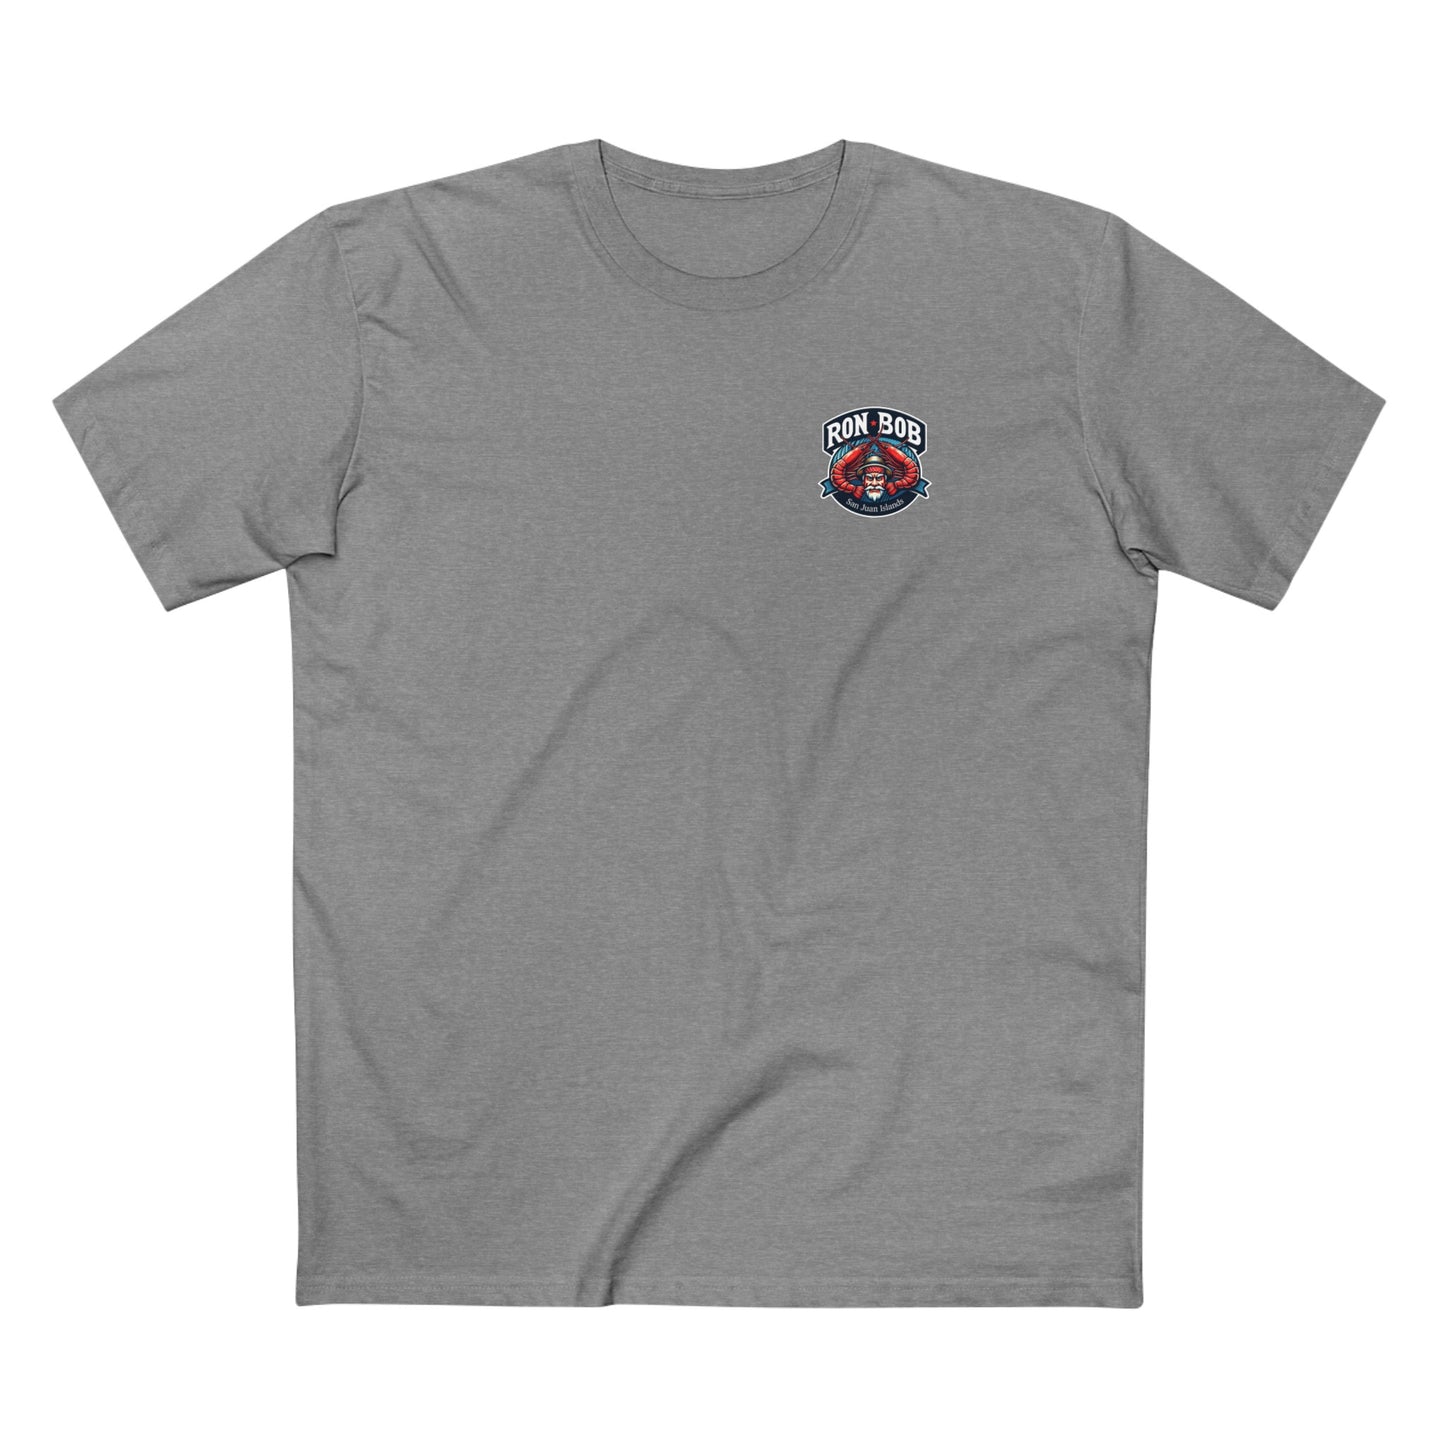 Cotton T-Shirt - Prawn Fisherman SJI (Multiple Colors)